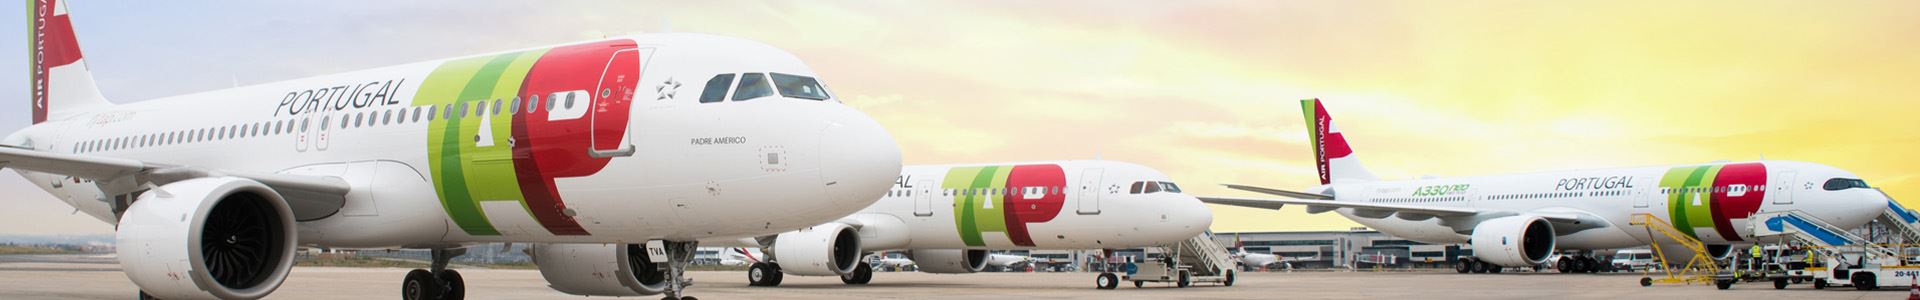 Fotografia mostrando três aviões lado a lado, decorados com as cores e o logotipo da TAP Air Portugal.